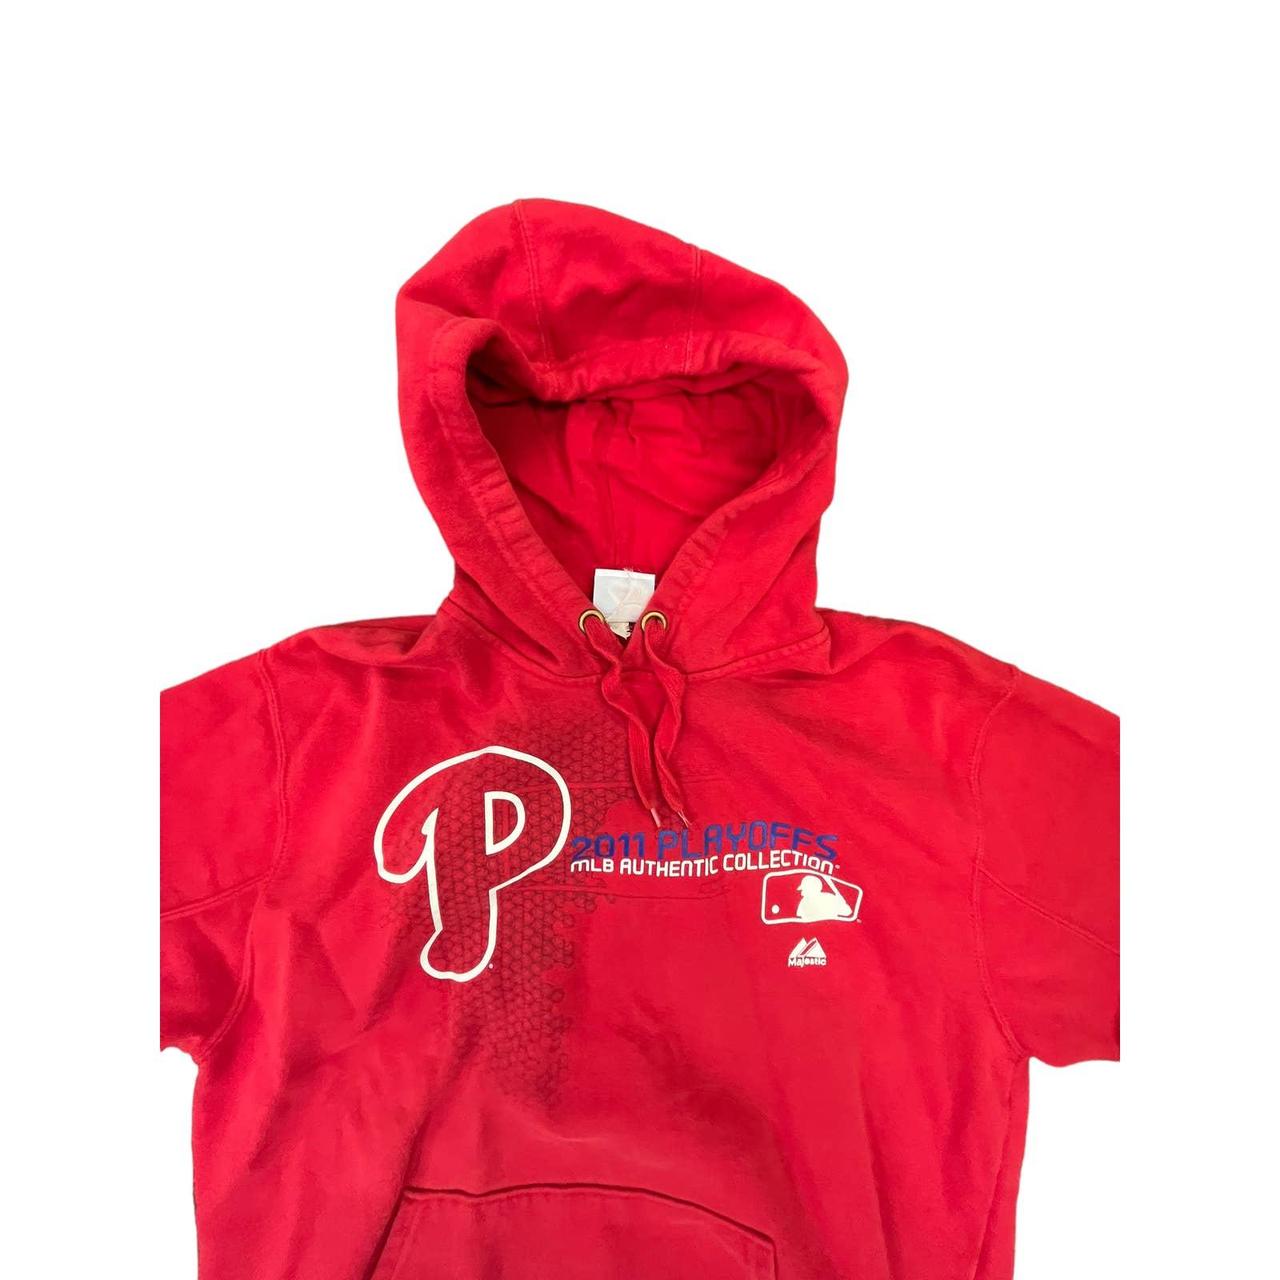 Phillies pullover #phillies #mlb #baseball #pullover - Depop